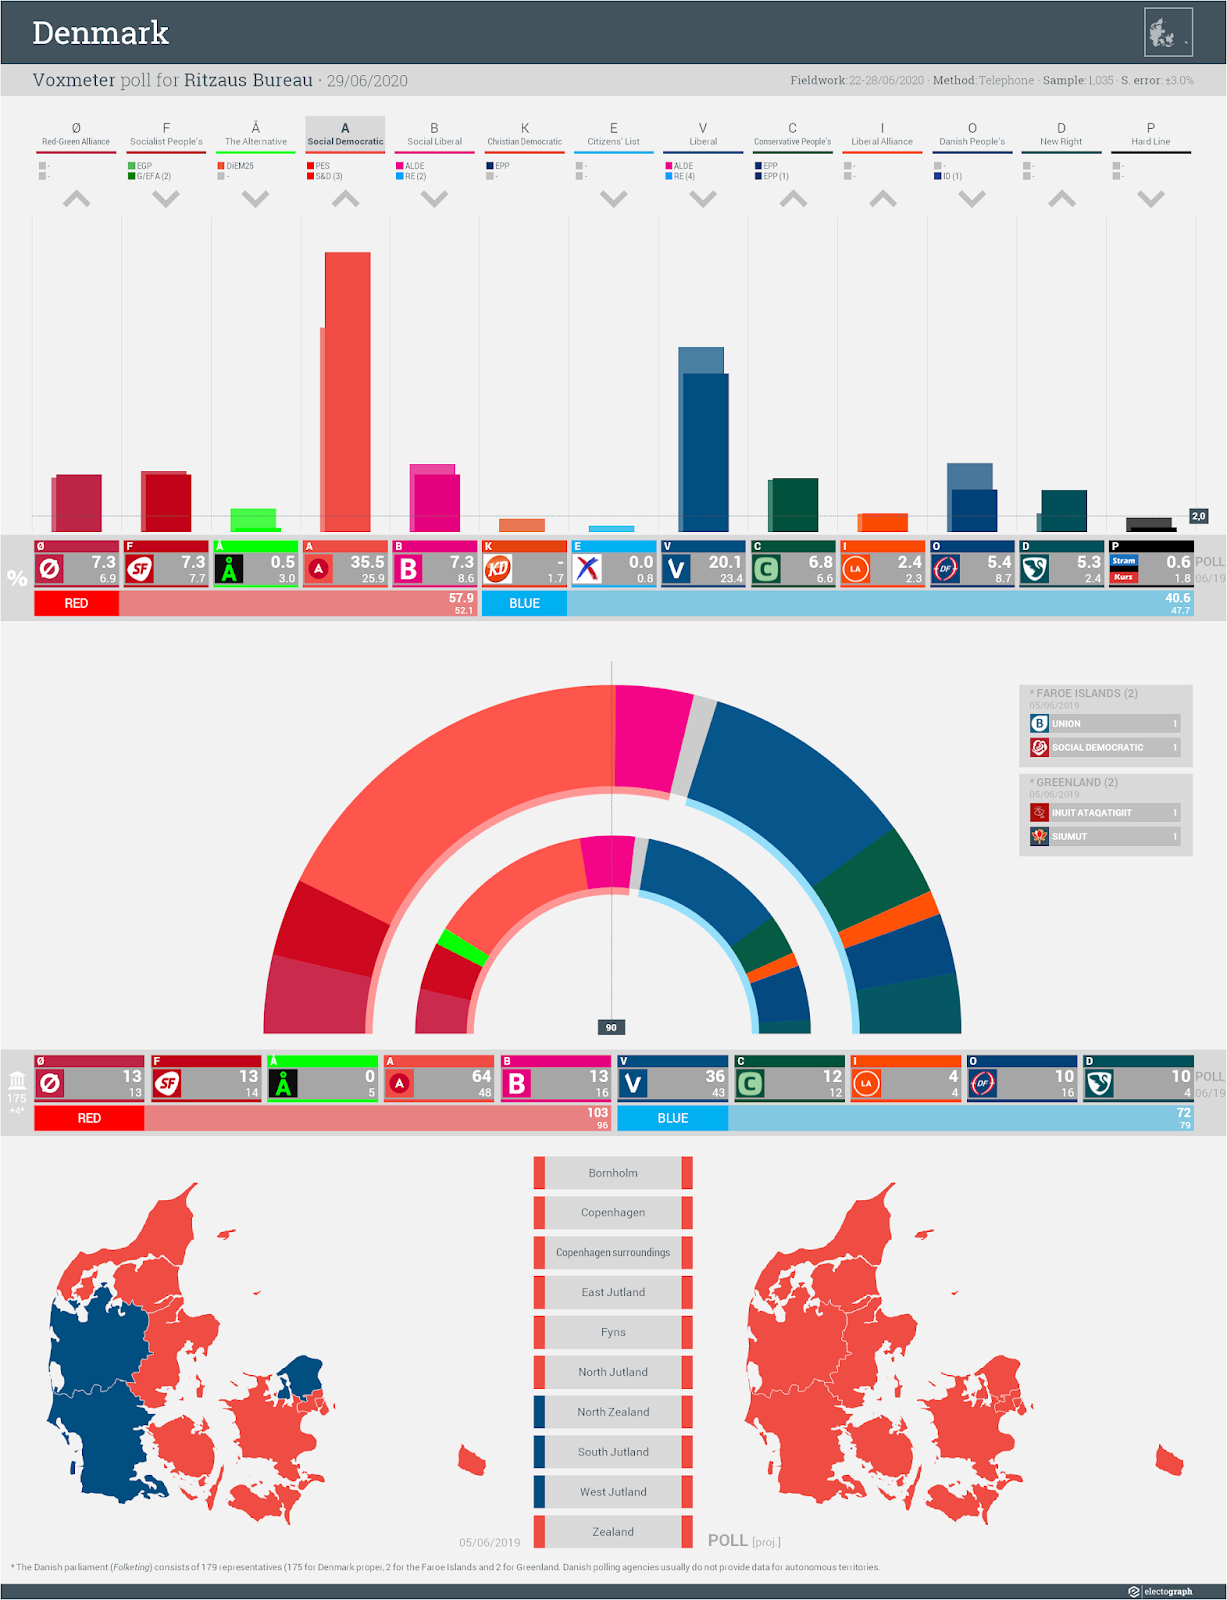 DENMARK: Voxmeter poll chart for Ritzaus Bureau, 29 June 2020